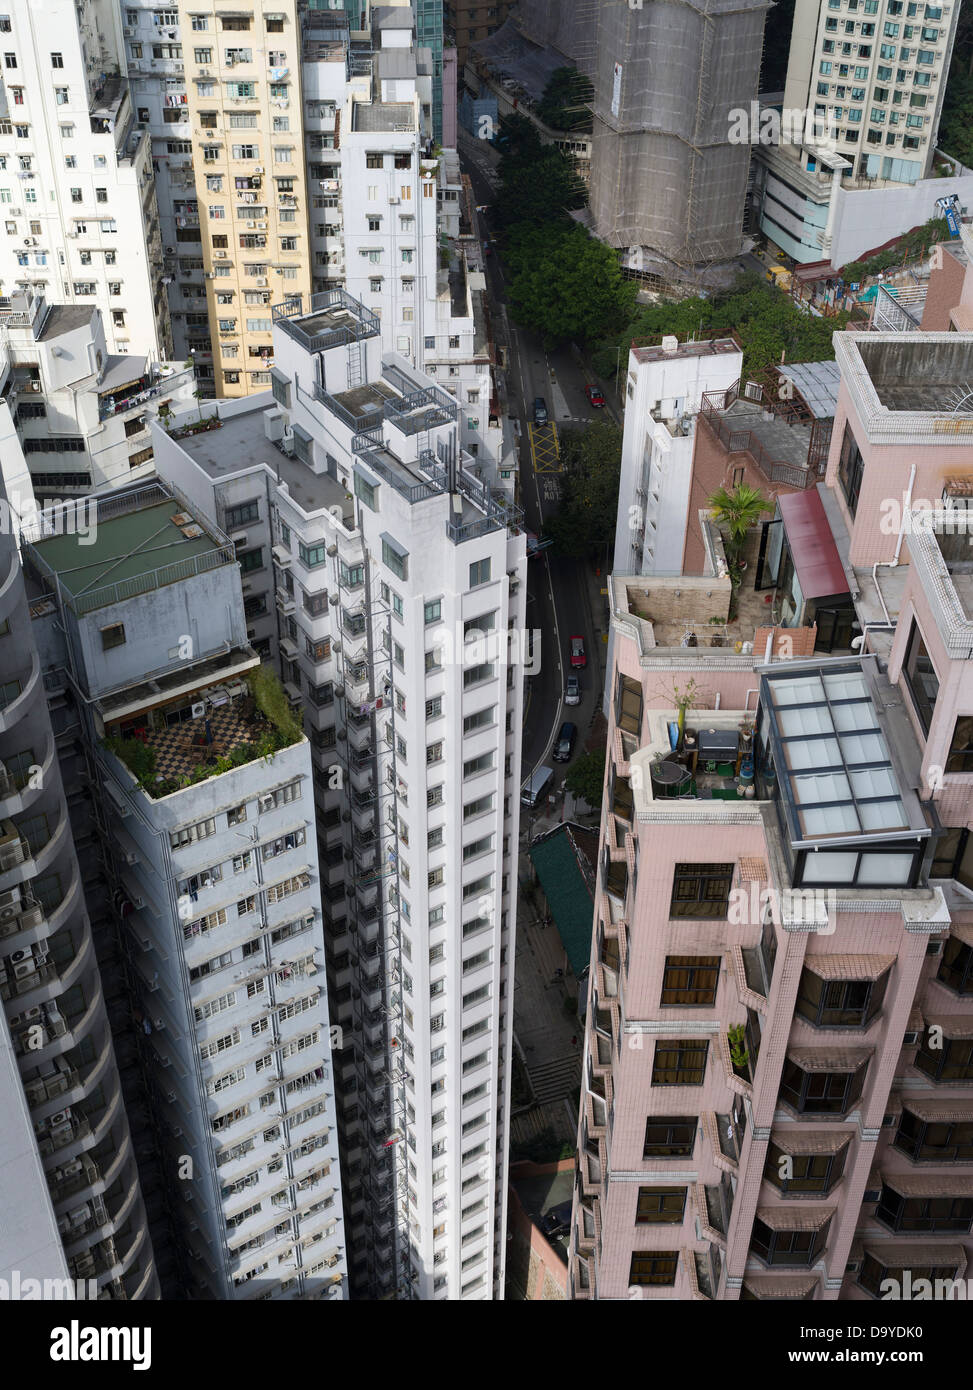 dh CAUSEWAY BAY HONGKONG Chinesische Hochhäuser Wolkenkratzer Gebäude blockieren einen dichten Turm in einem Wohngebiet Stockfoto